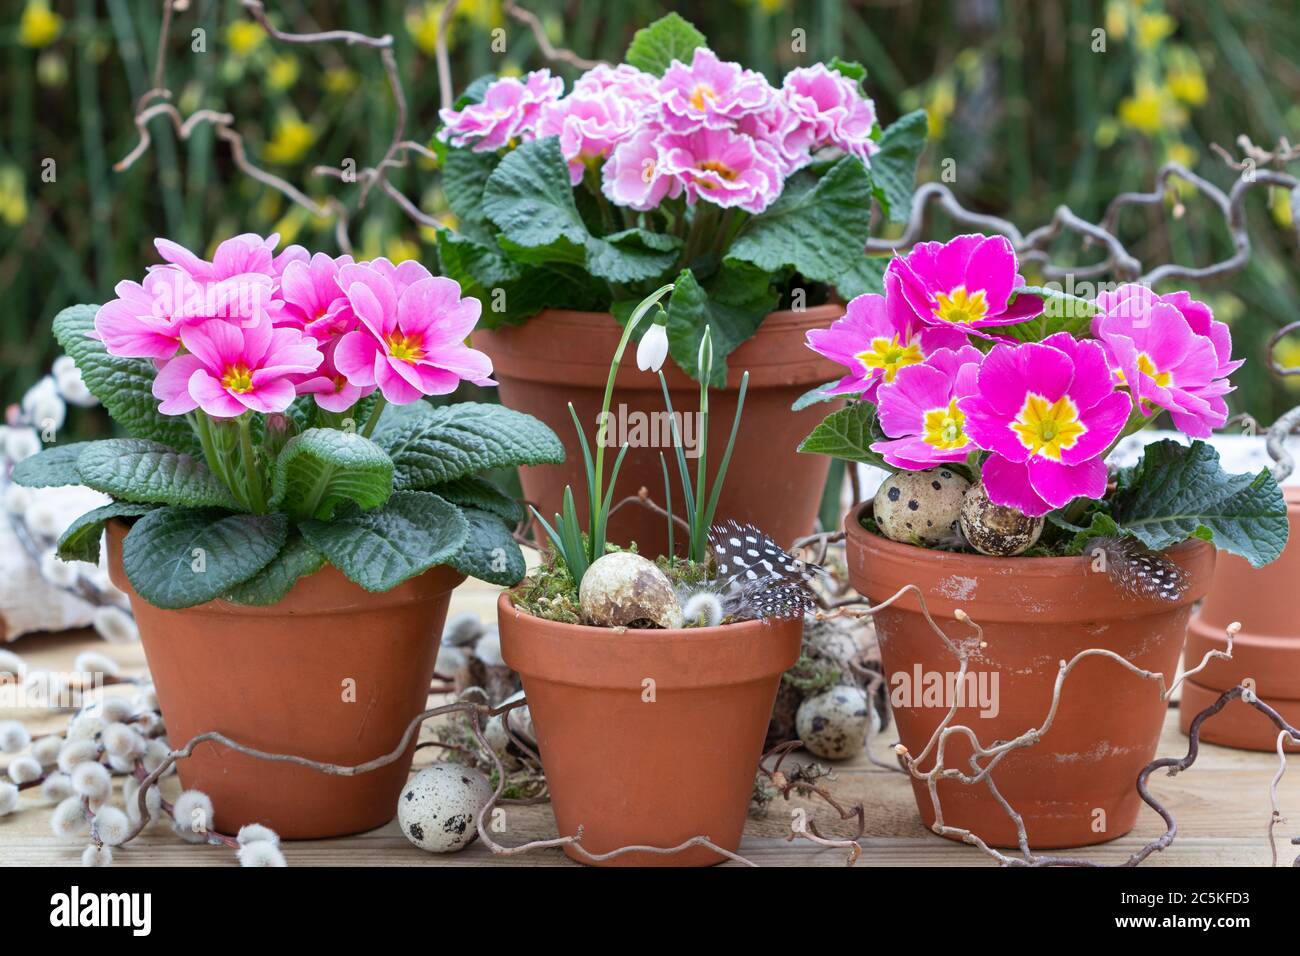 roses primrosiers en pots de terre cuite comme rusic décoration de jardin de printemps Banque D'Images